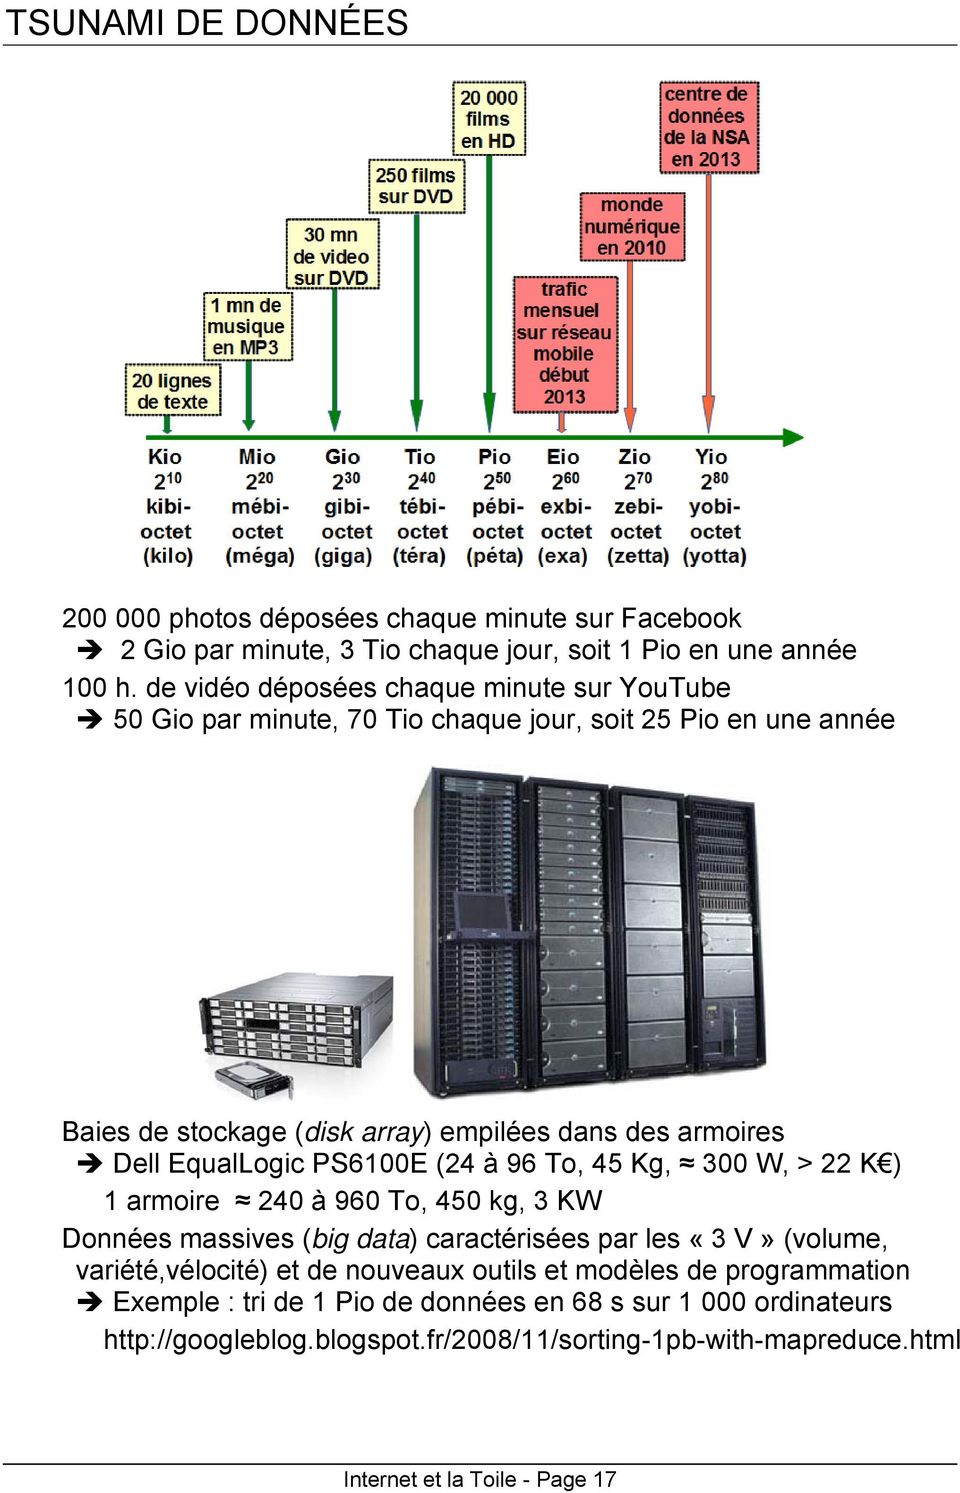 EqualLogic PS6100E (24 à 96 To, 45 Kg, 300 W, > 22 K ) 1 armoire 240 à 960 To, 450 kg, 3 KW Données massives (big data) caractérisées par les «3 V» (volume, variété,vélocité)